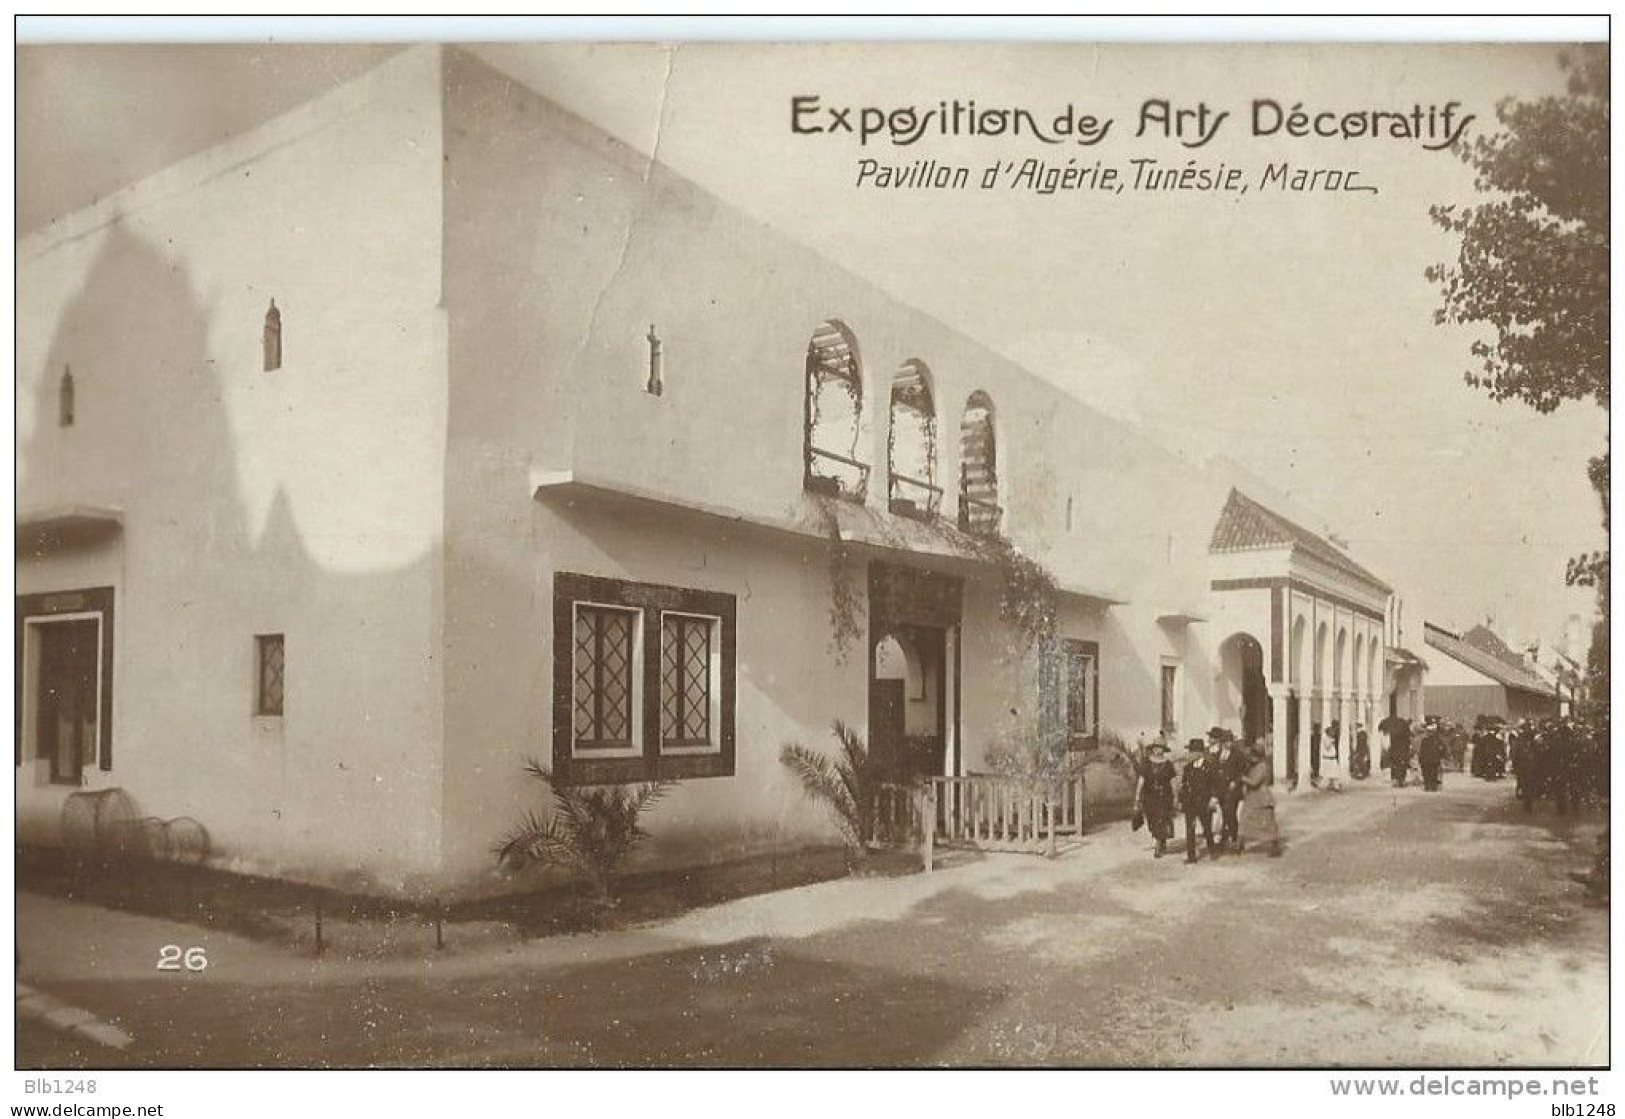 [75] Paris > Exposition Des Arts Decoratifs Pavillon D'Algerie, Tunisie Maroc - Expositions